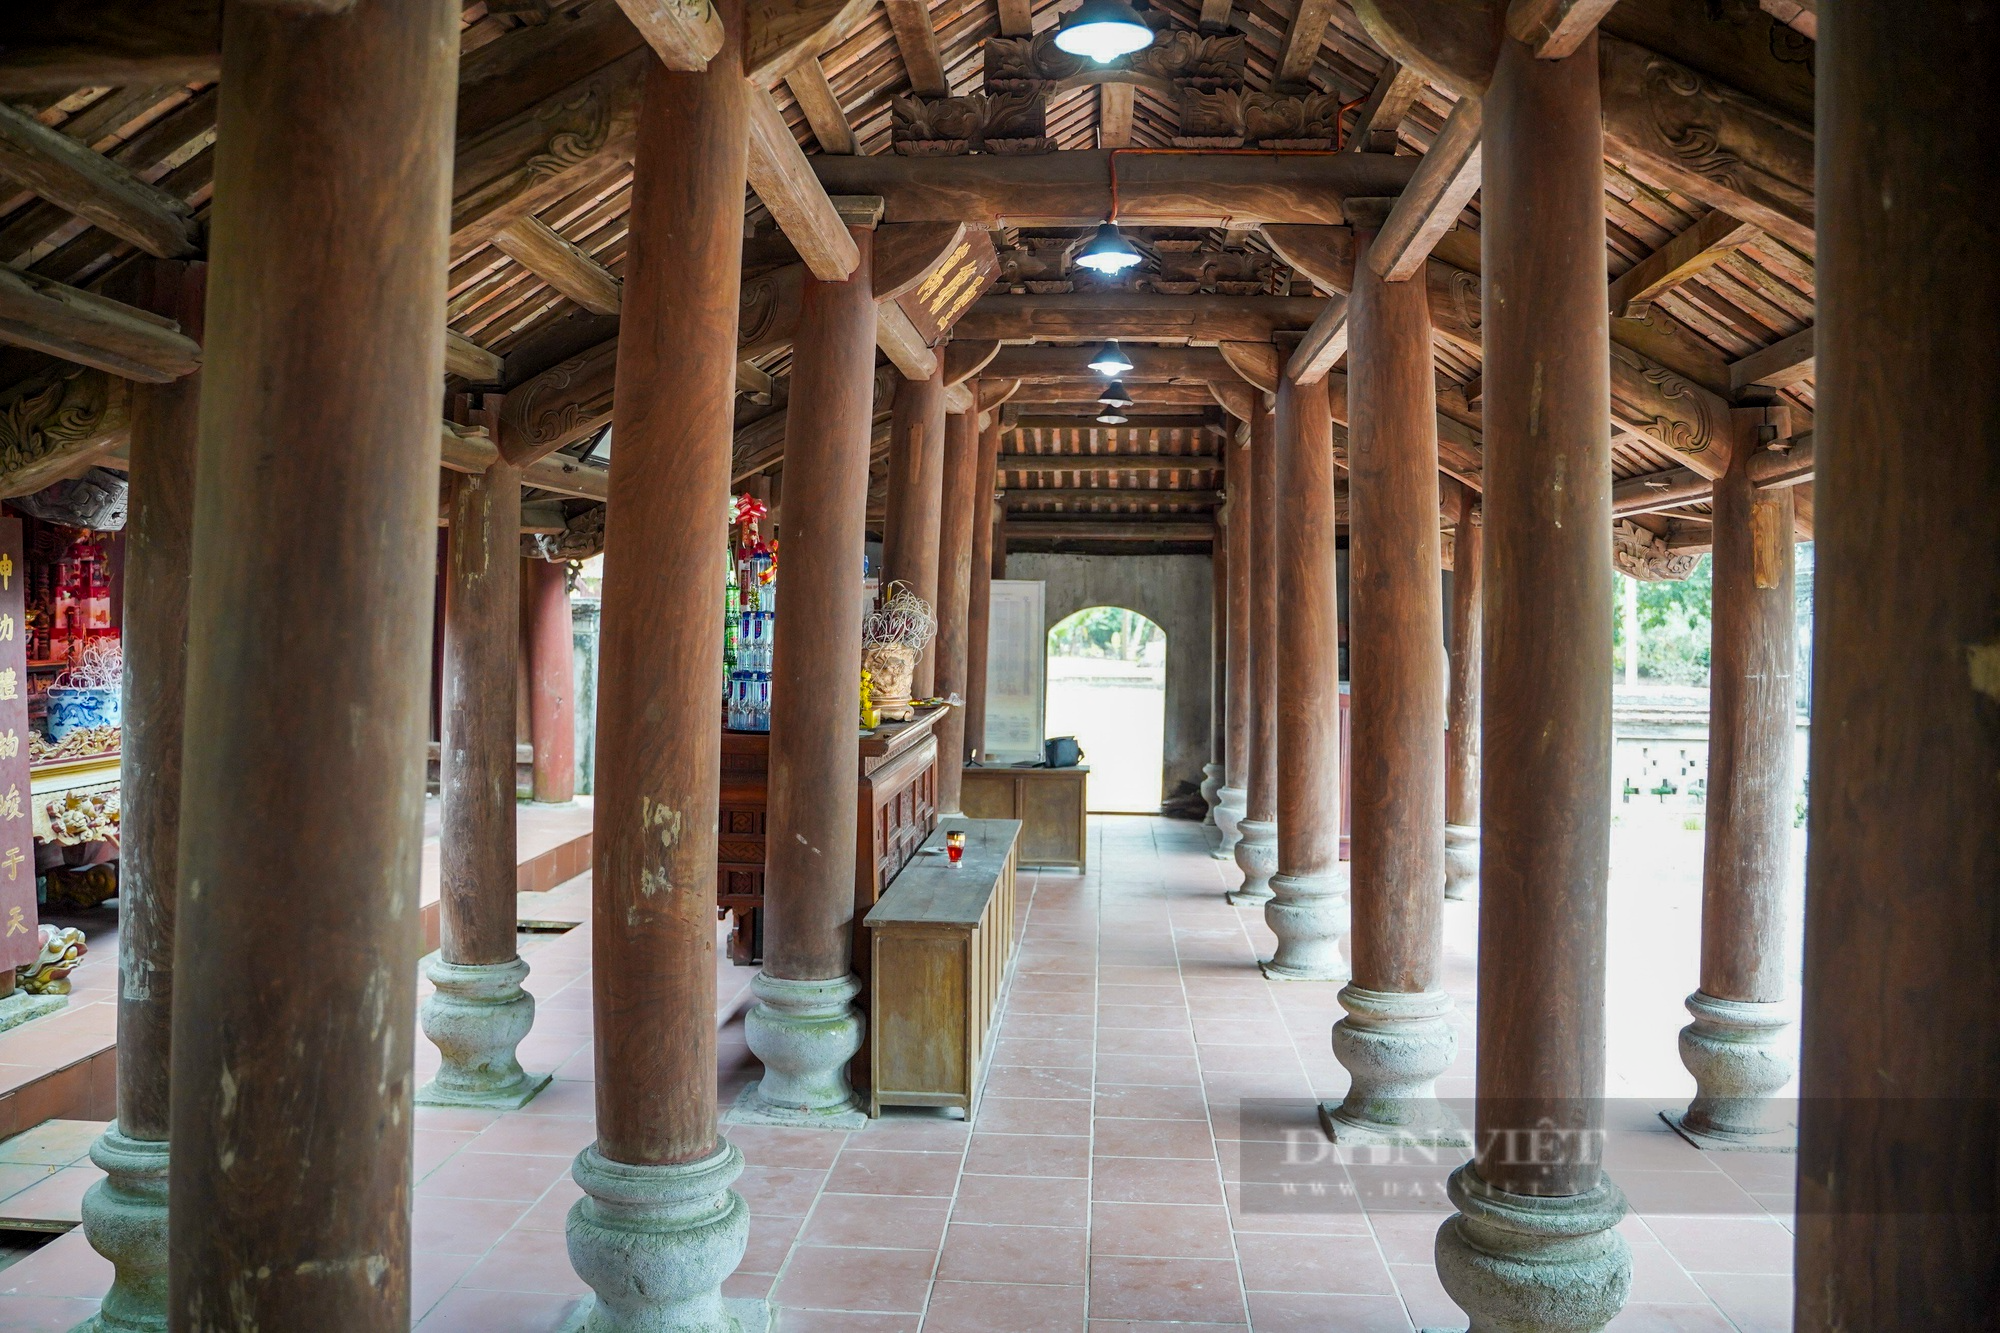 Ngai thờ sơn son thếp vàng 300 tuổi ở Thái Bình được công nhận là bảo vật quốc gia - Ảnh 11.